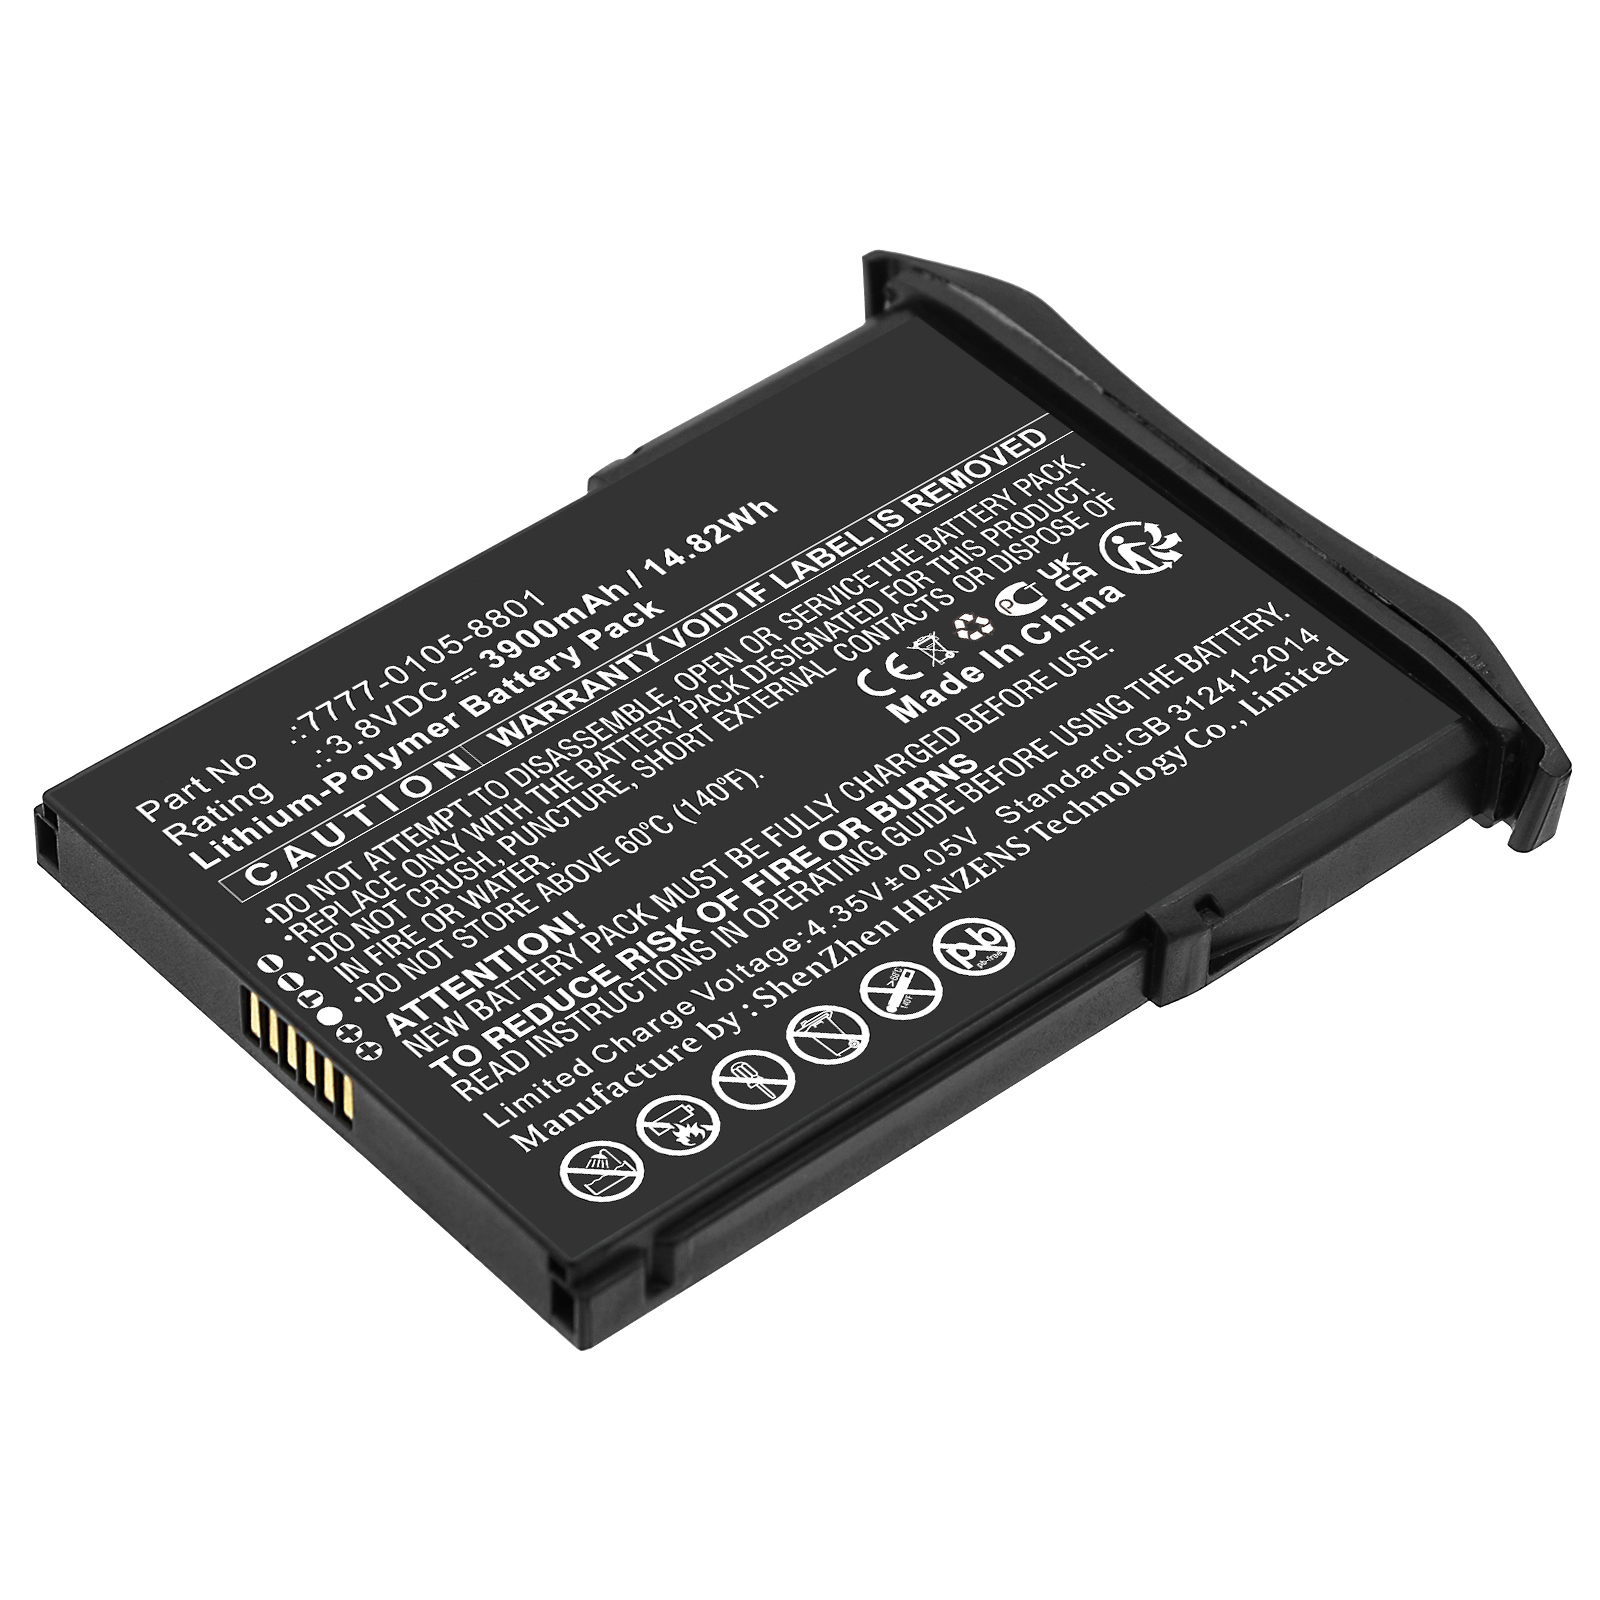 Synergy Digital Barcode Scanner Battery, Compatible with NCR Orderman 7777-0105-8801 Barcode Scanner Battery (Li-Pol, 3.8V, 3900mAh)